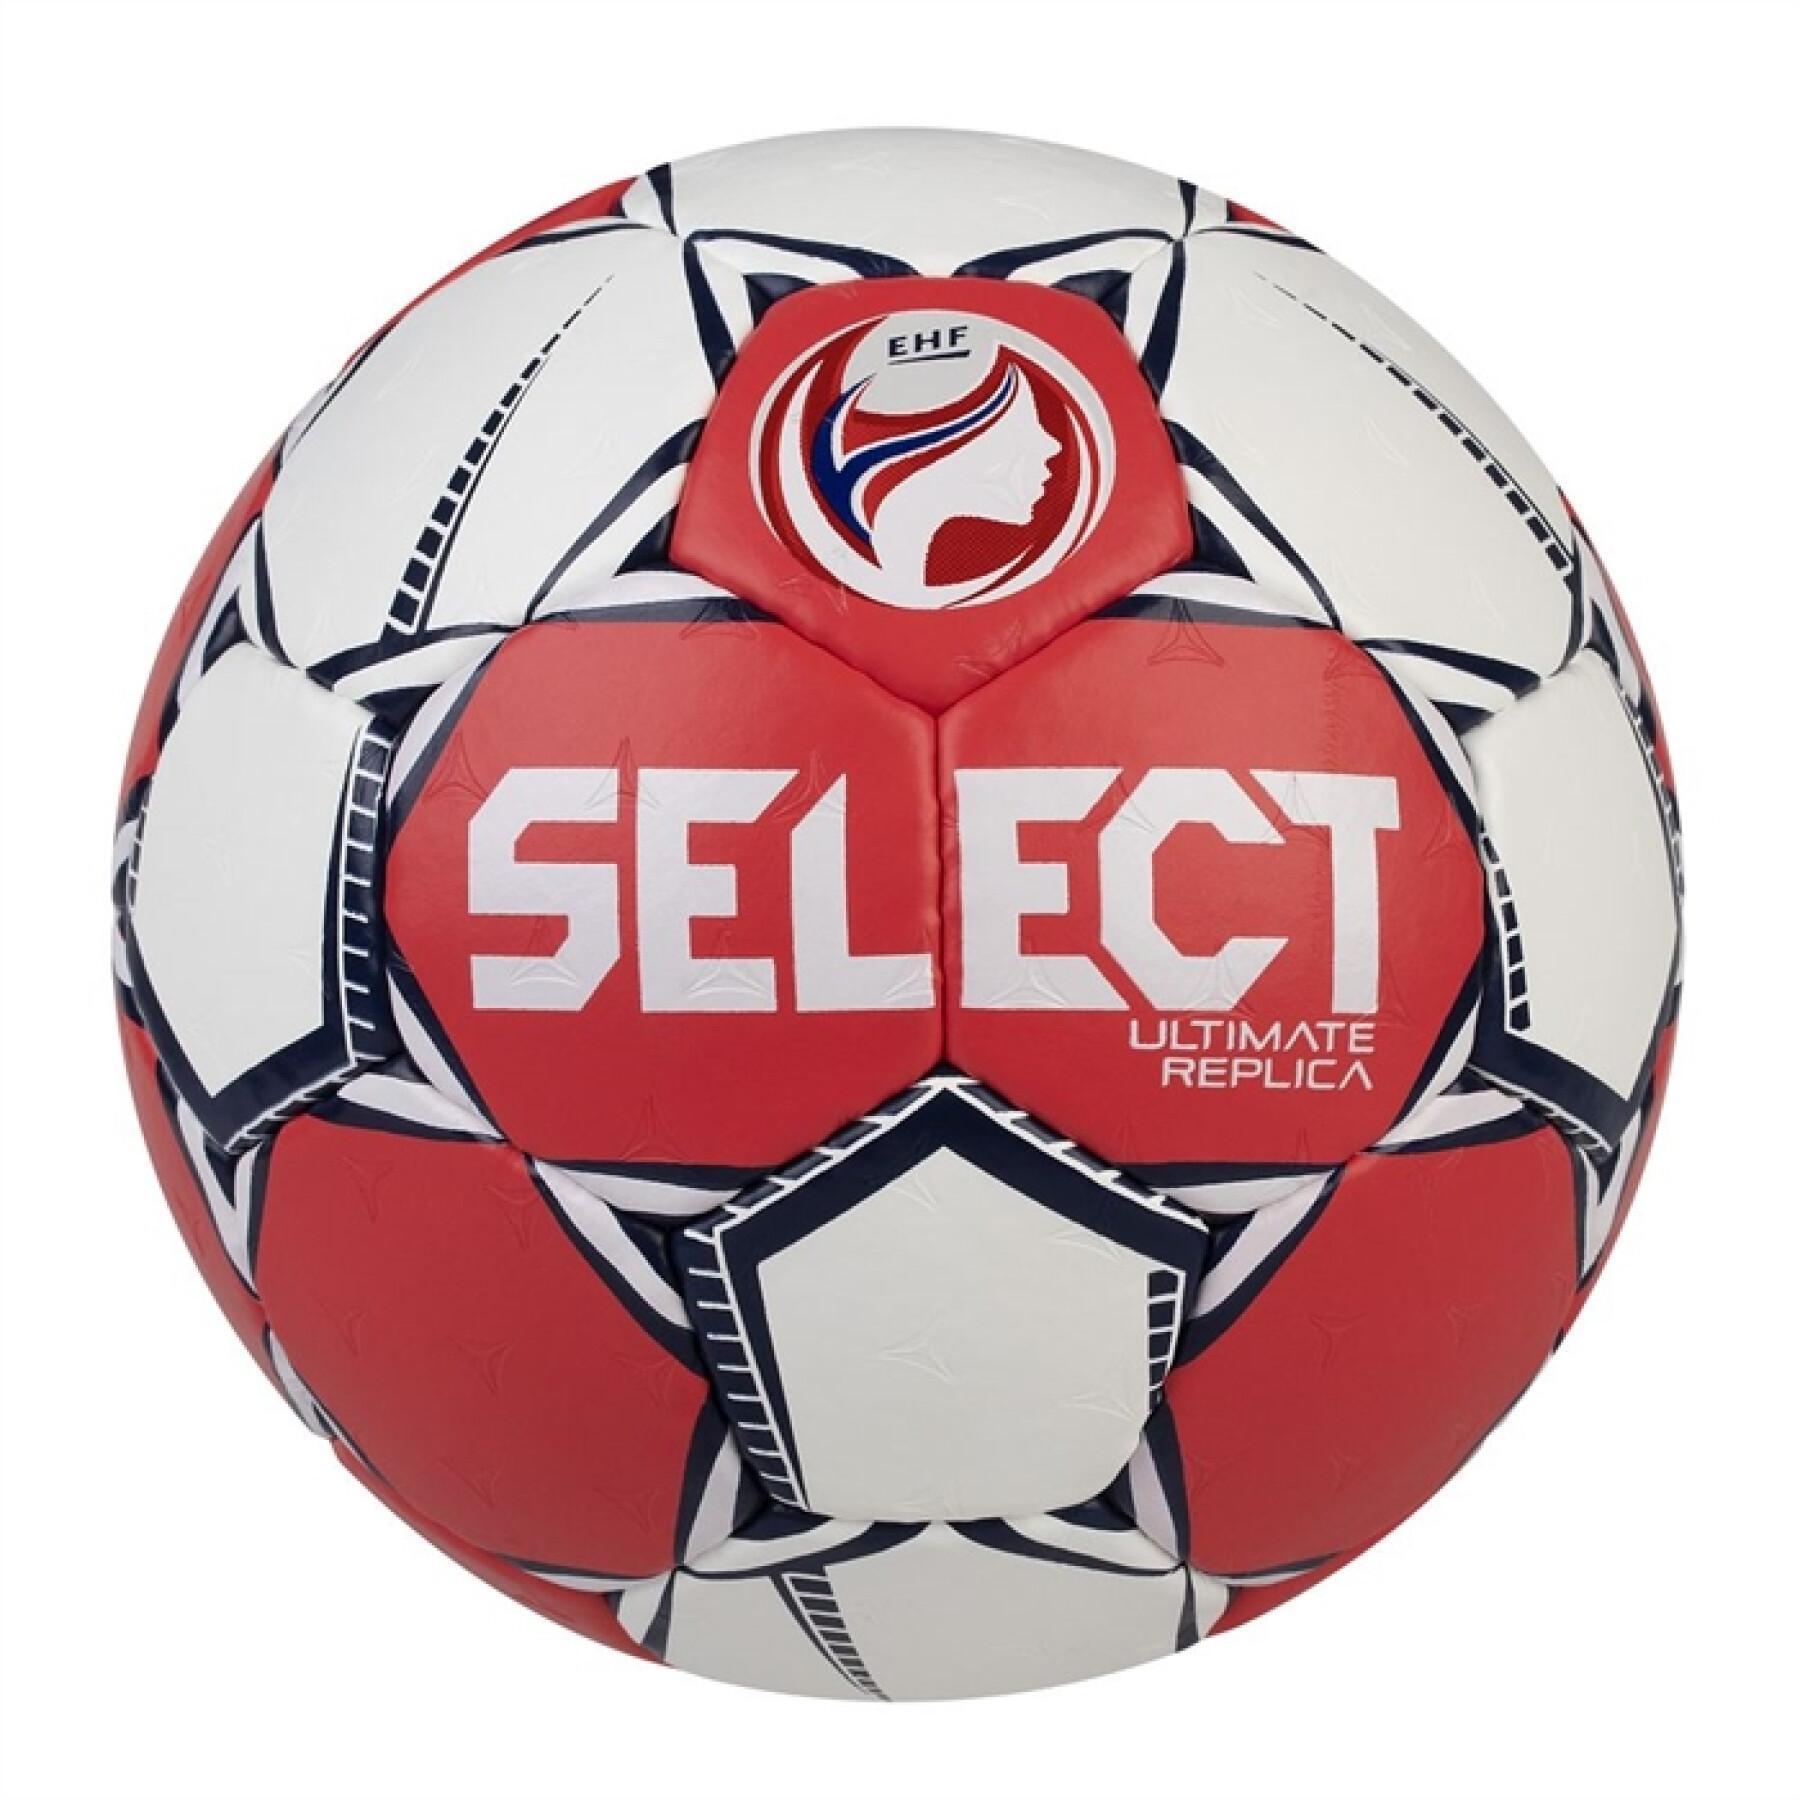 Handboll Select Ultimate Replica EHF Euro 2020